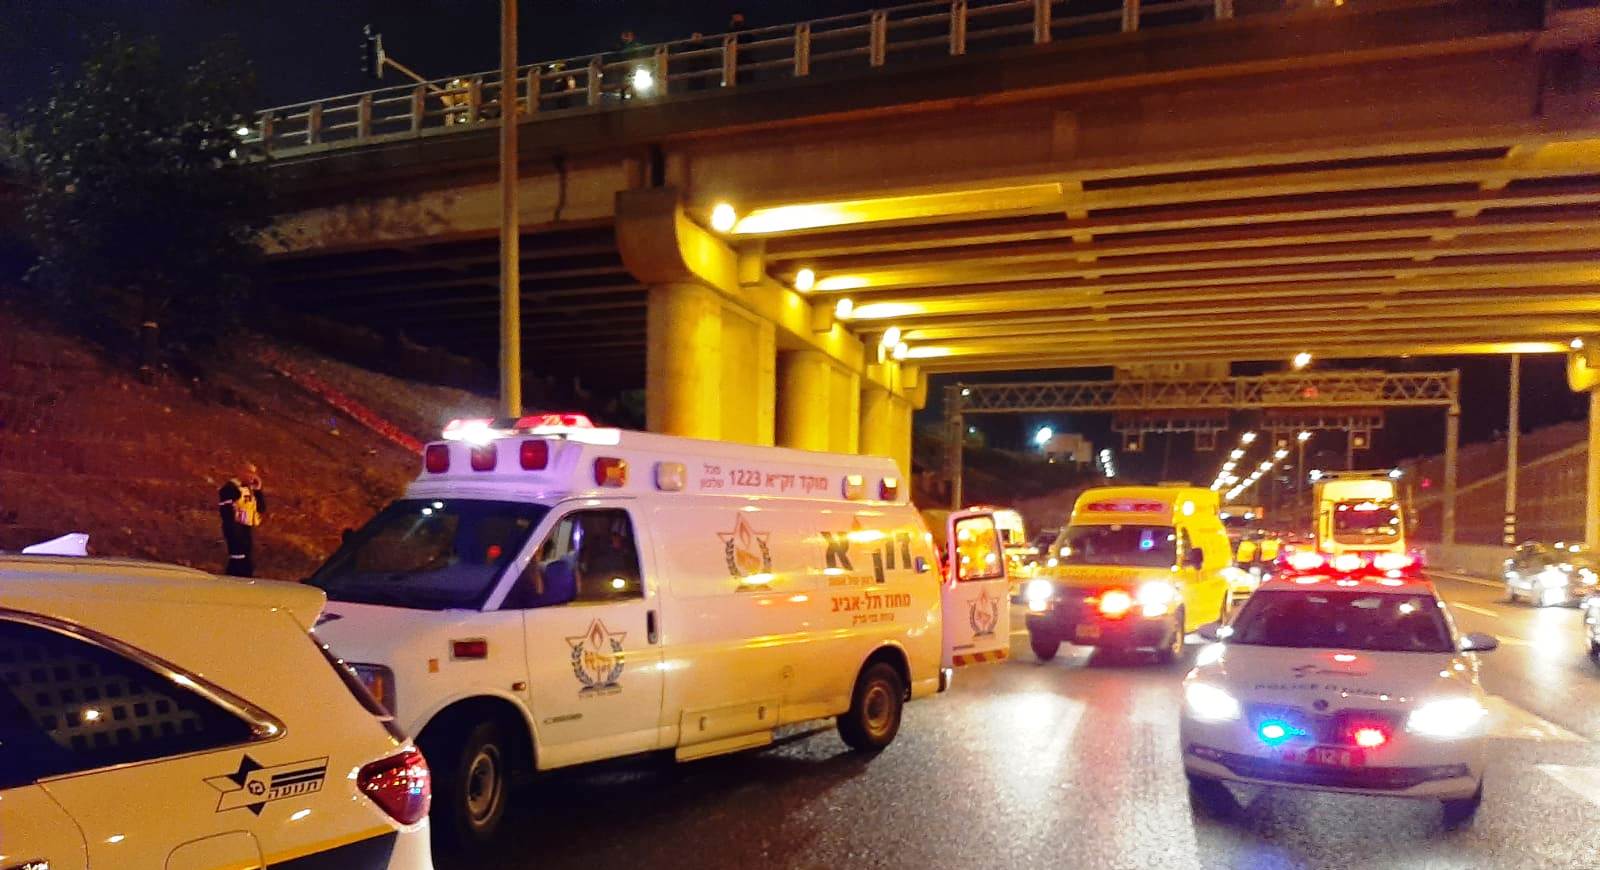 אישה נפלה אל מותה בגשר בר אילן. צילום: זק"א תל אביב